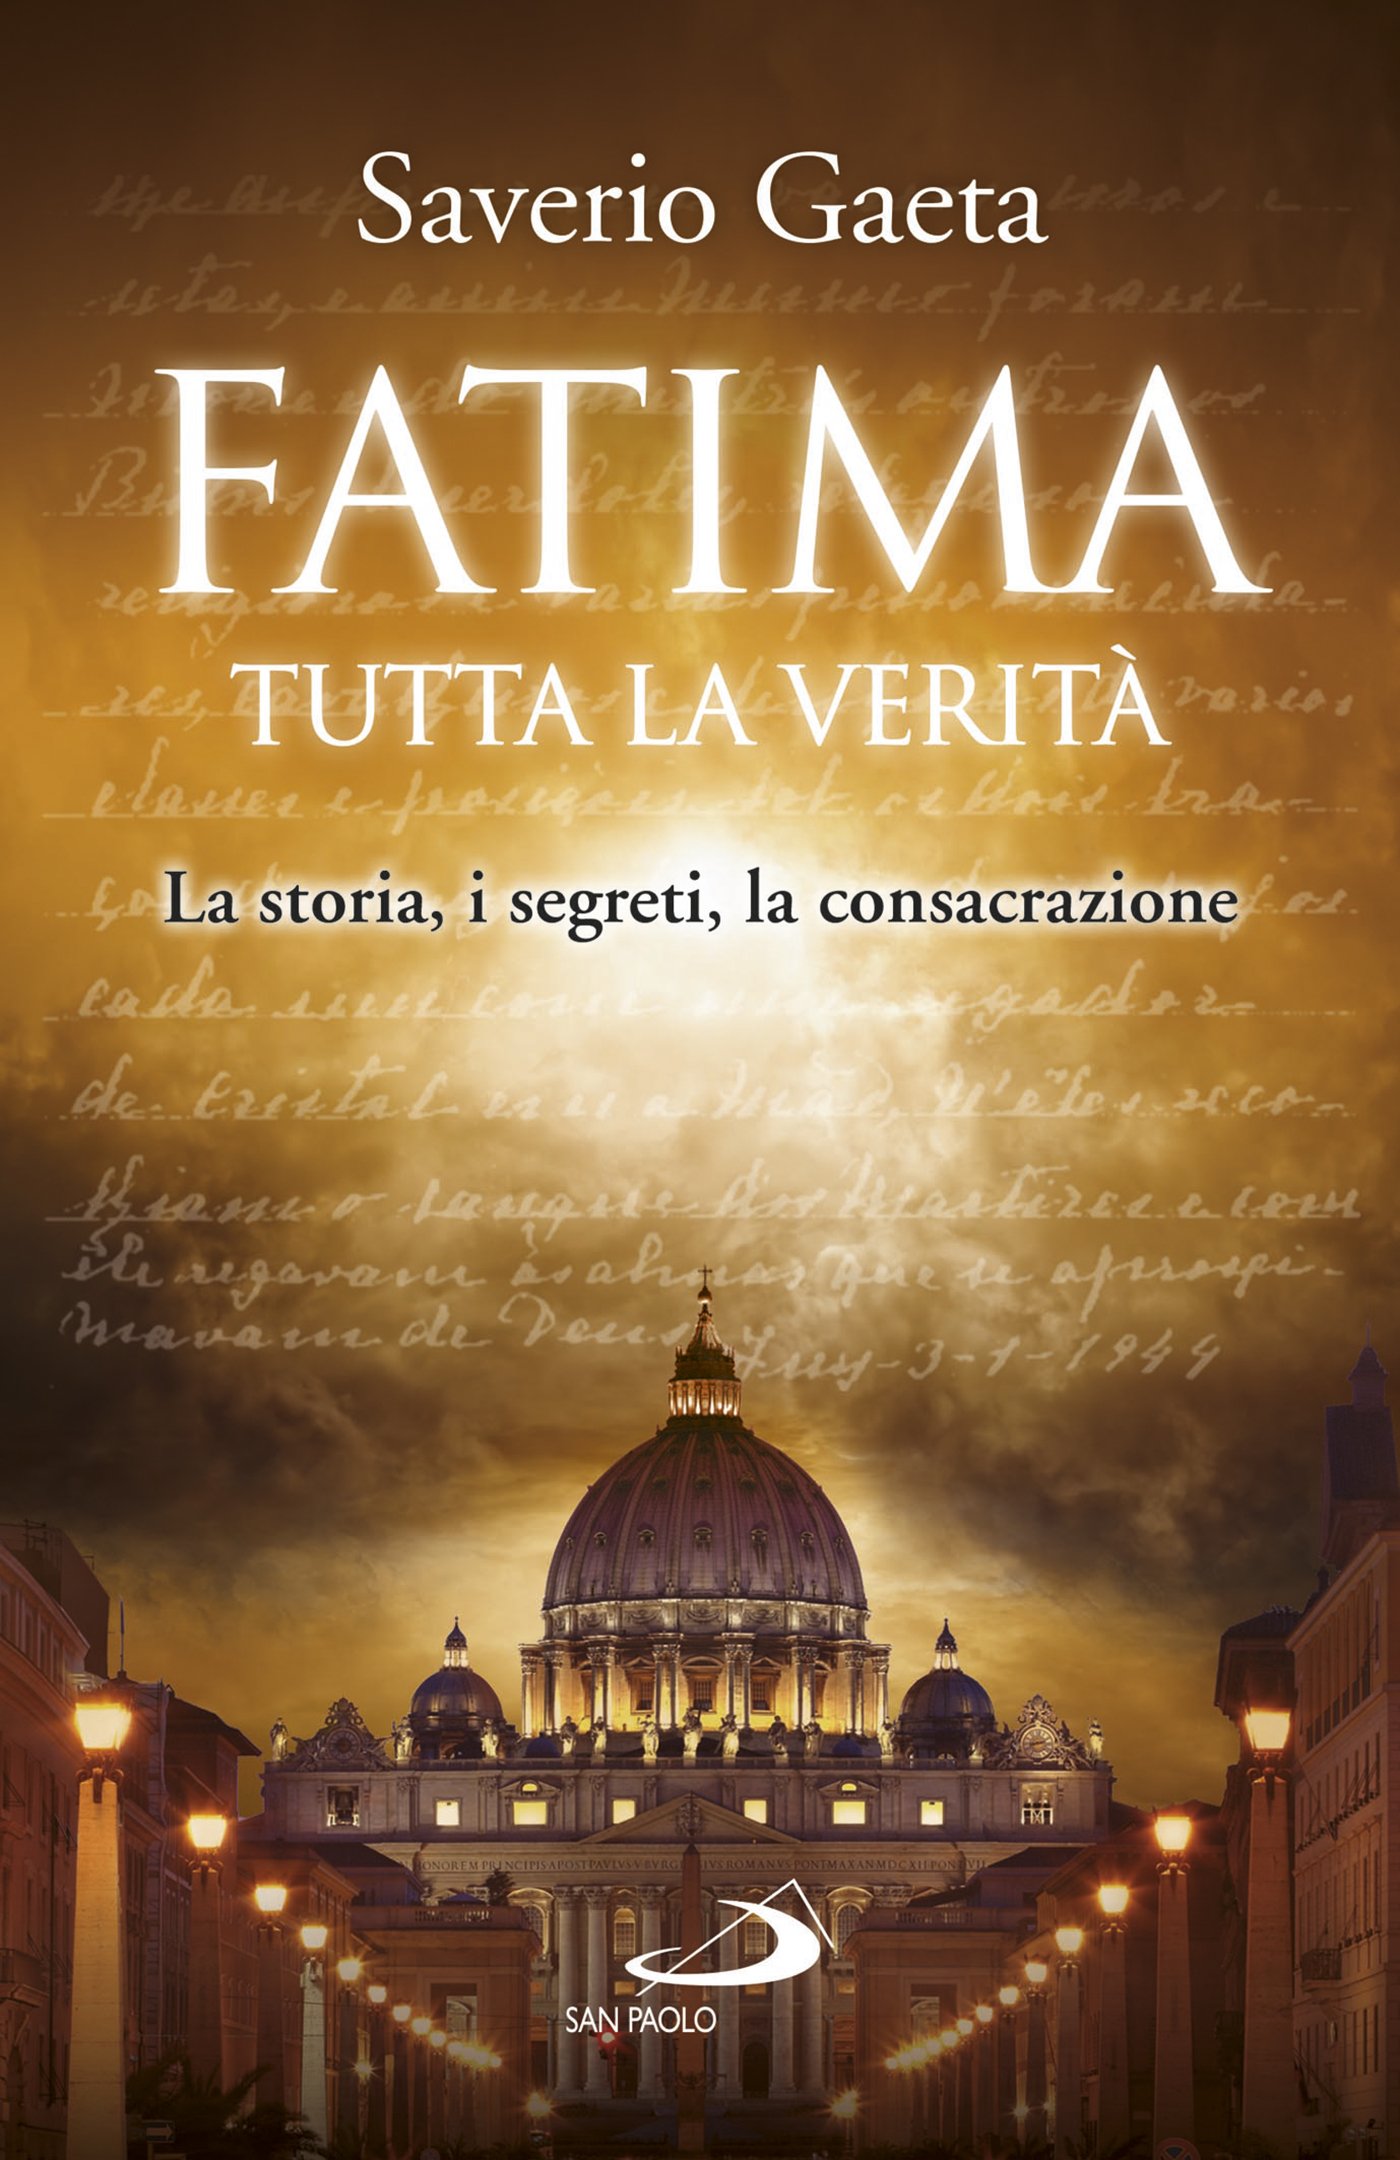 Fatima. Tutta la verità: La storia, i segreti, la consacrazione (Italian Edition)